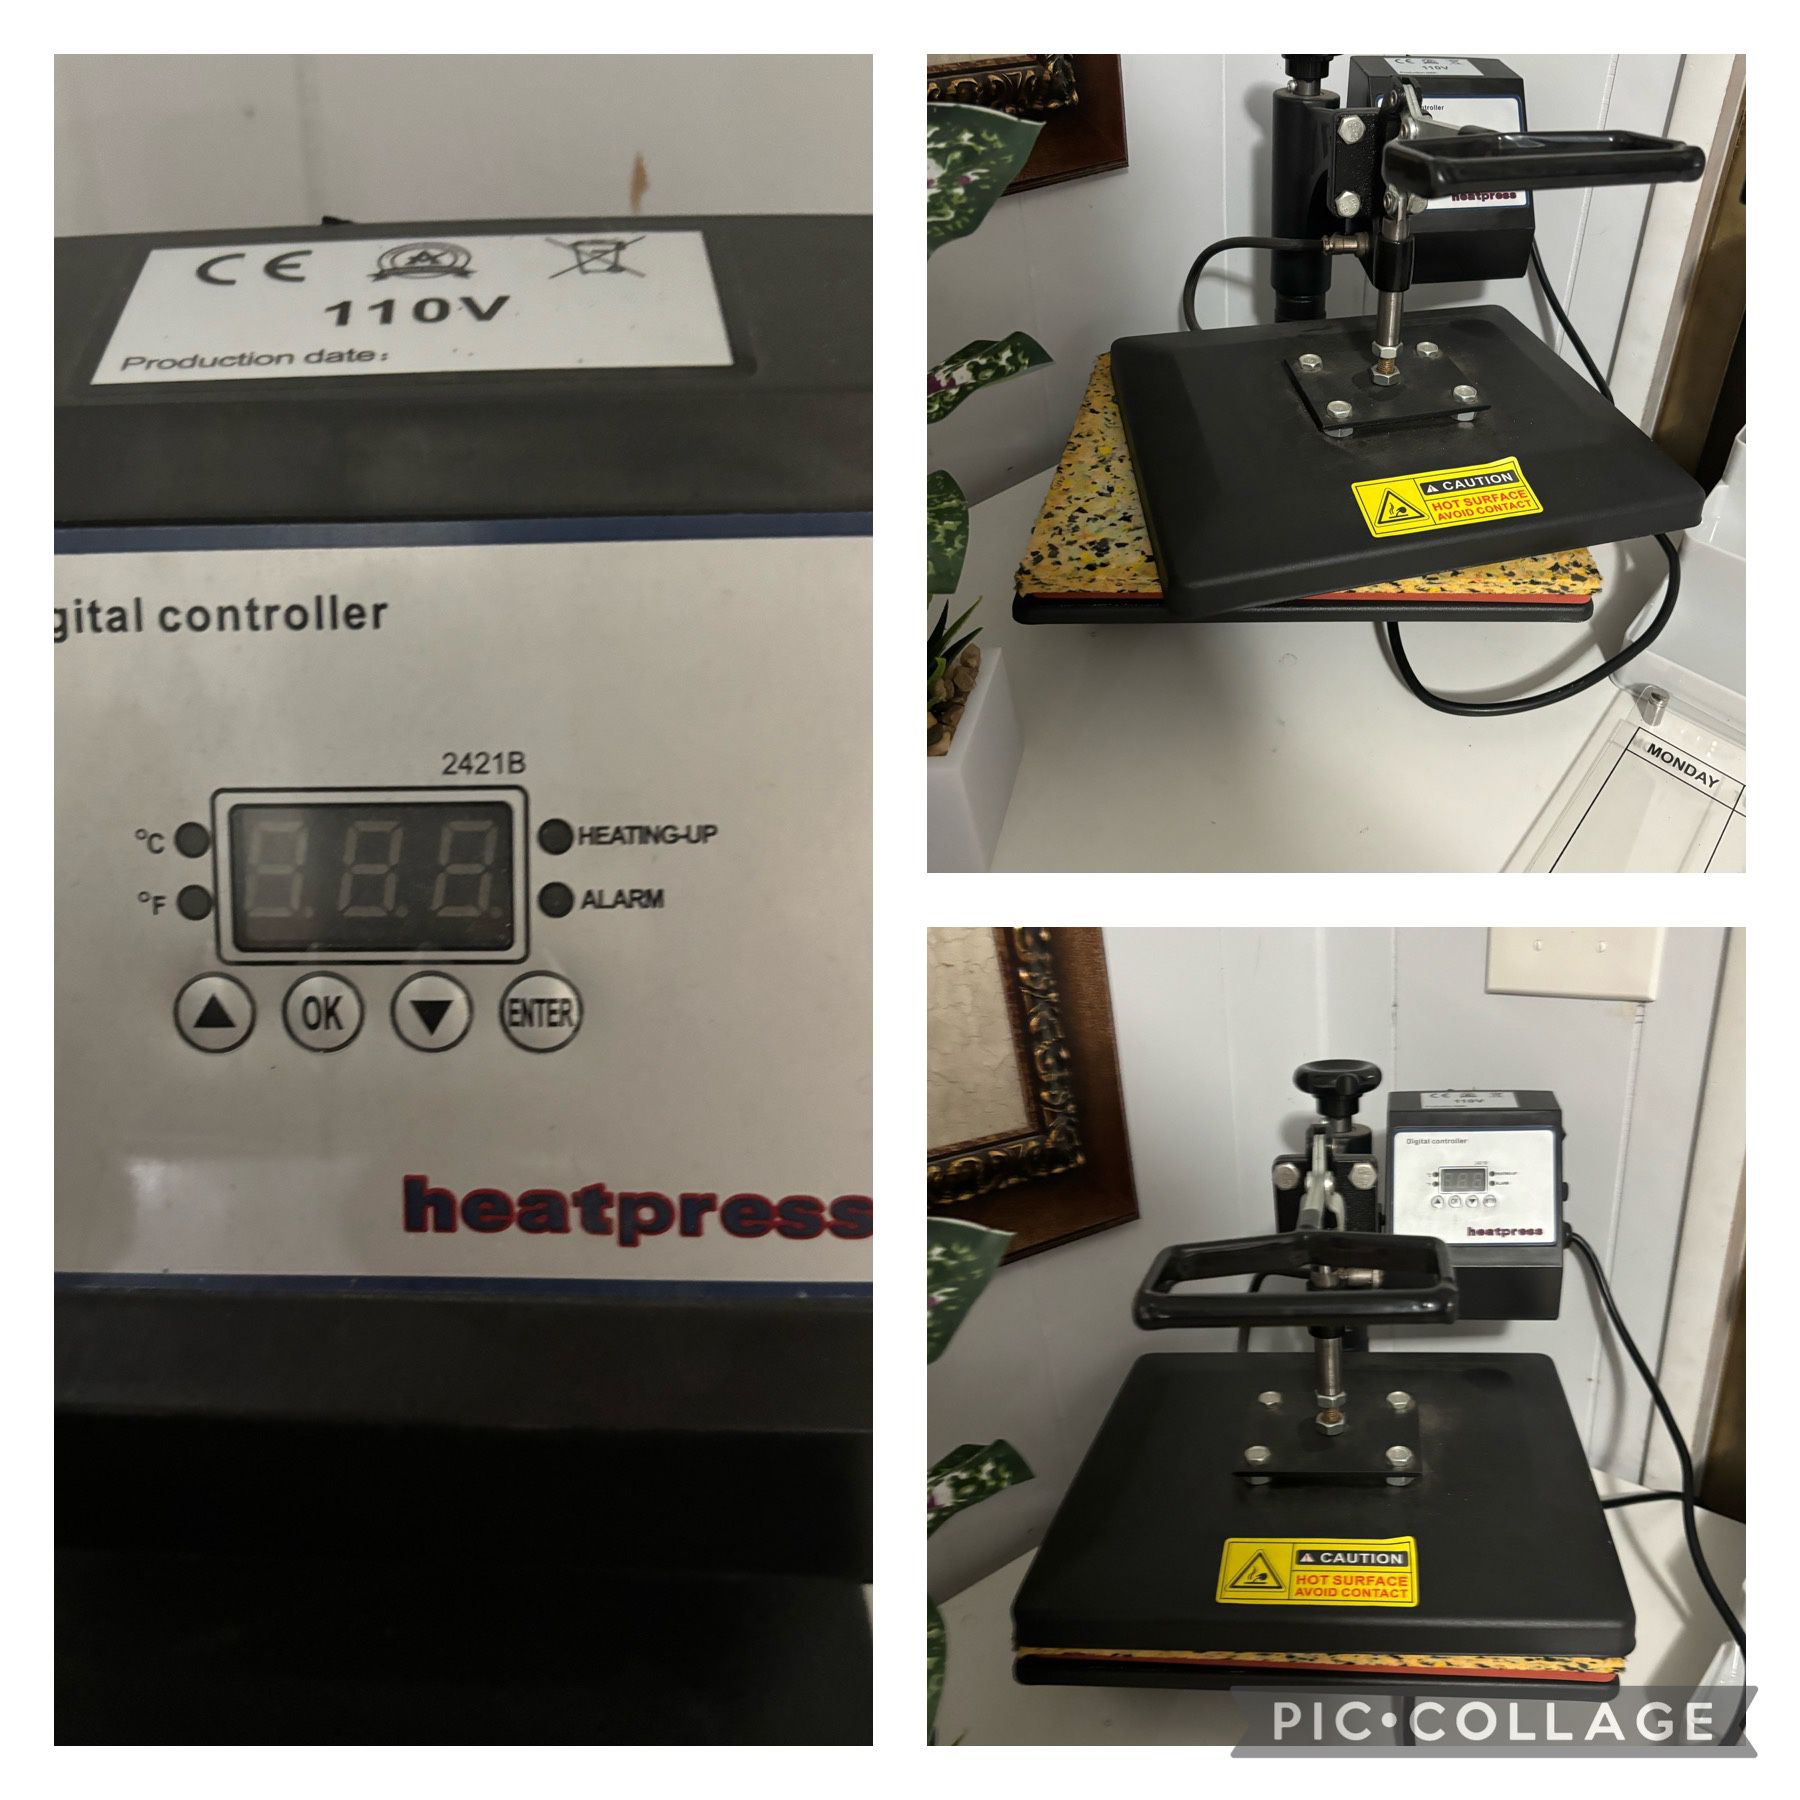 Heat press